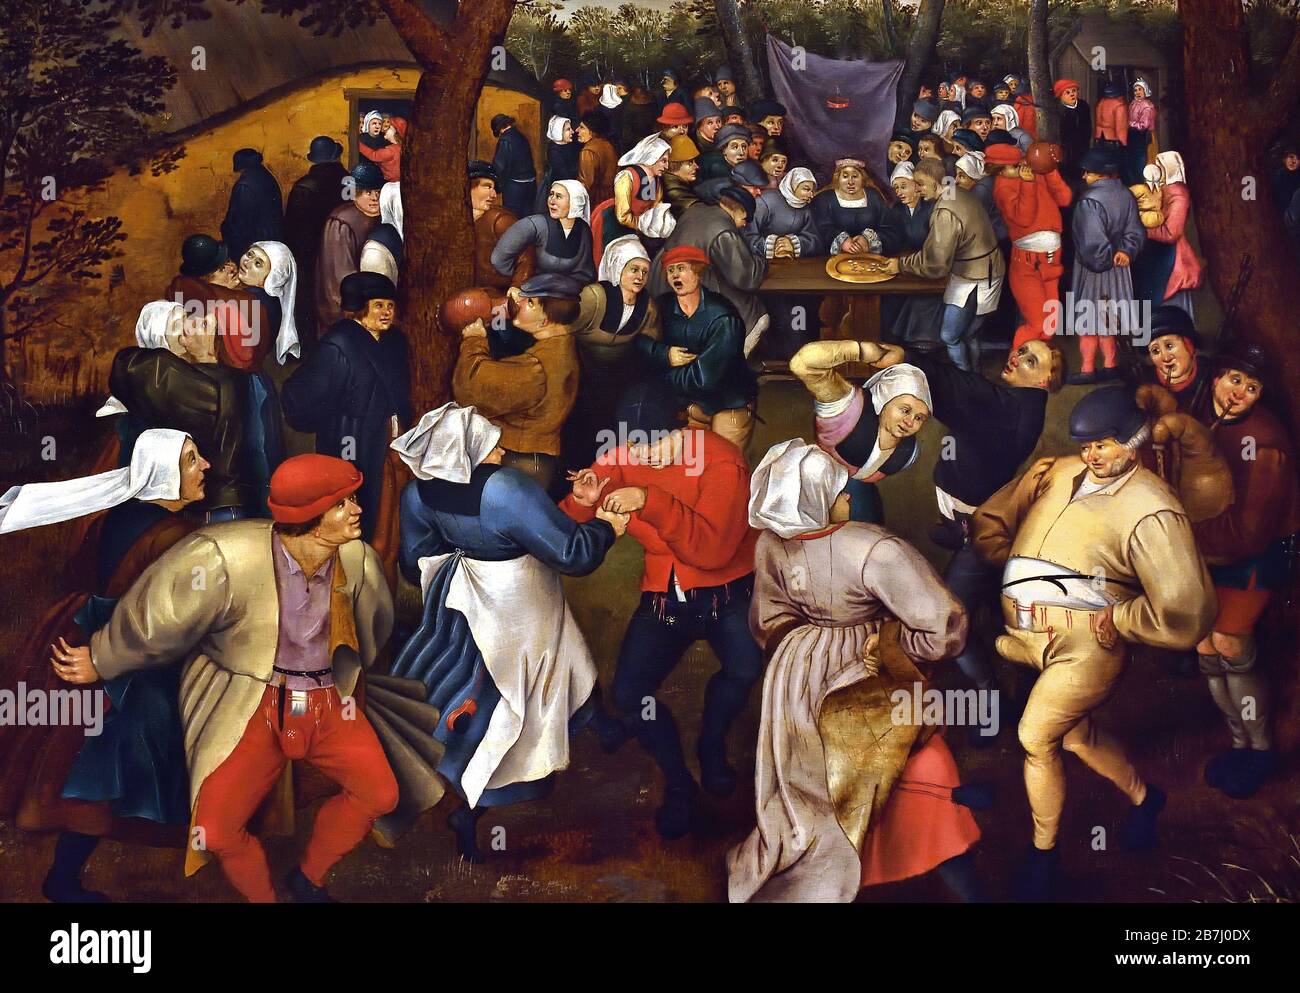 Der Hochzeitstanz im Freien von Pieter Brueghel, dem Jüngeren 1564-1637, der Familie Brueghel ( Bruegel oder Breughel ), flämischen Malern 16. Bis 17. Jahrhundert, Belgier, Belgien. Stockfoto